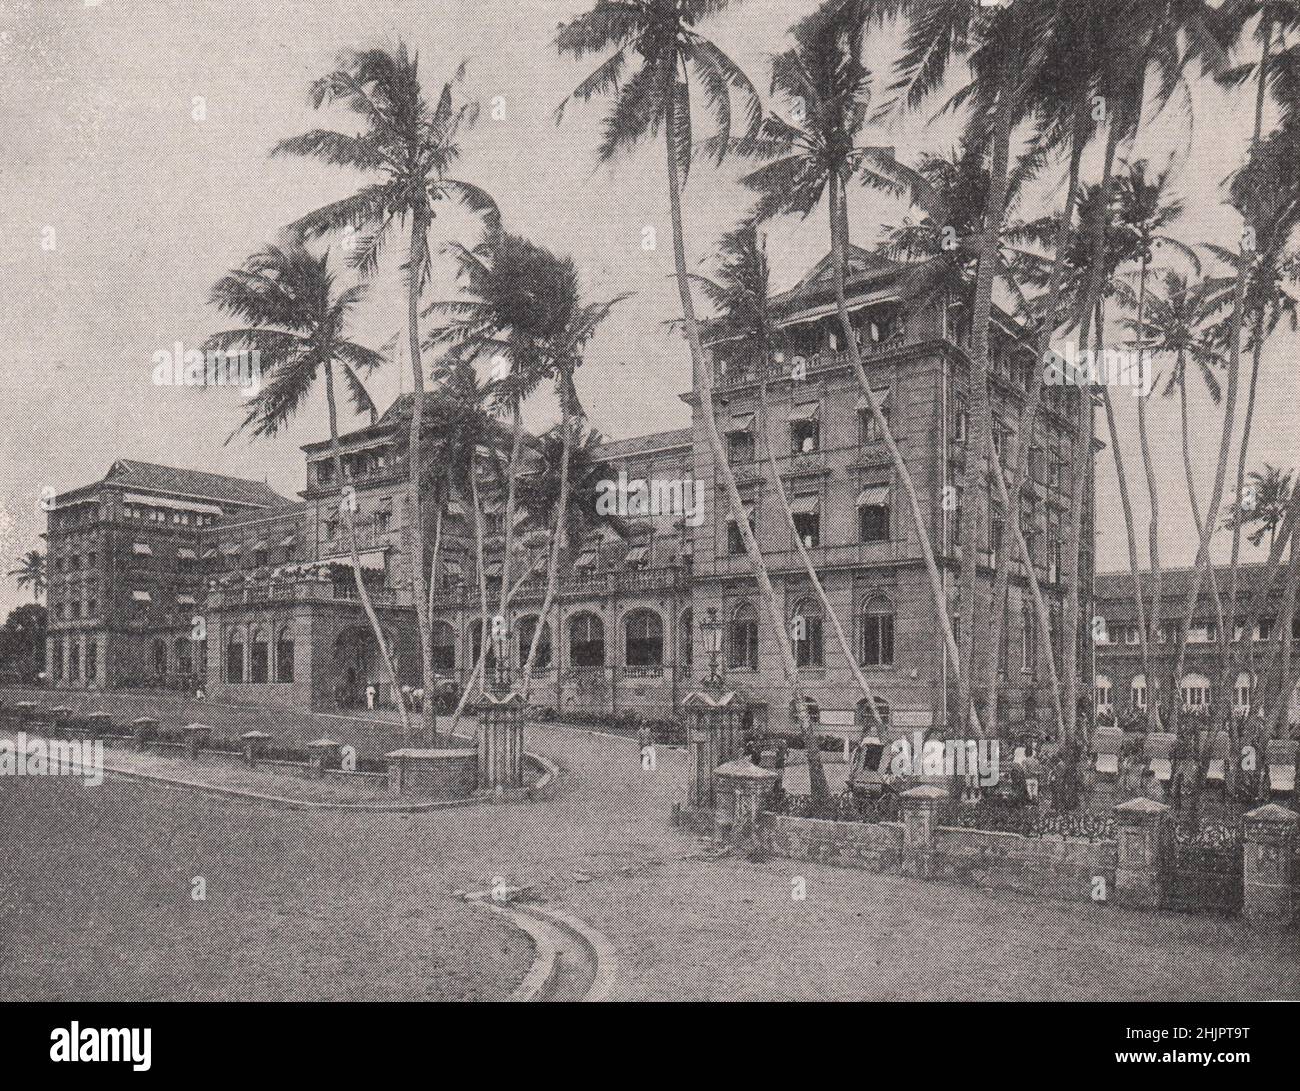 Colombo's palatial caravanserai: The Galle face hotel. Sri Lanka. Ceylon (1923) Stock Photo